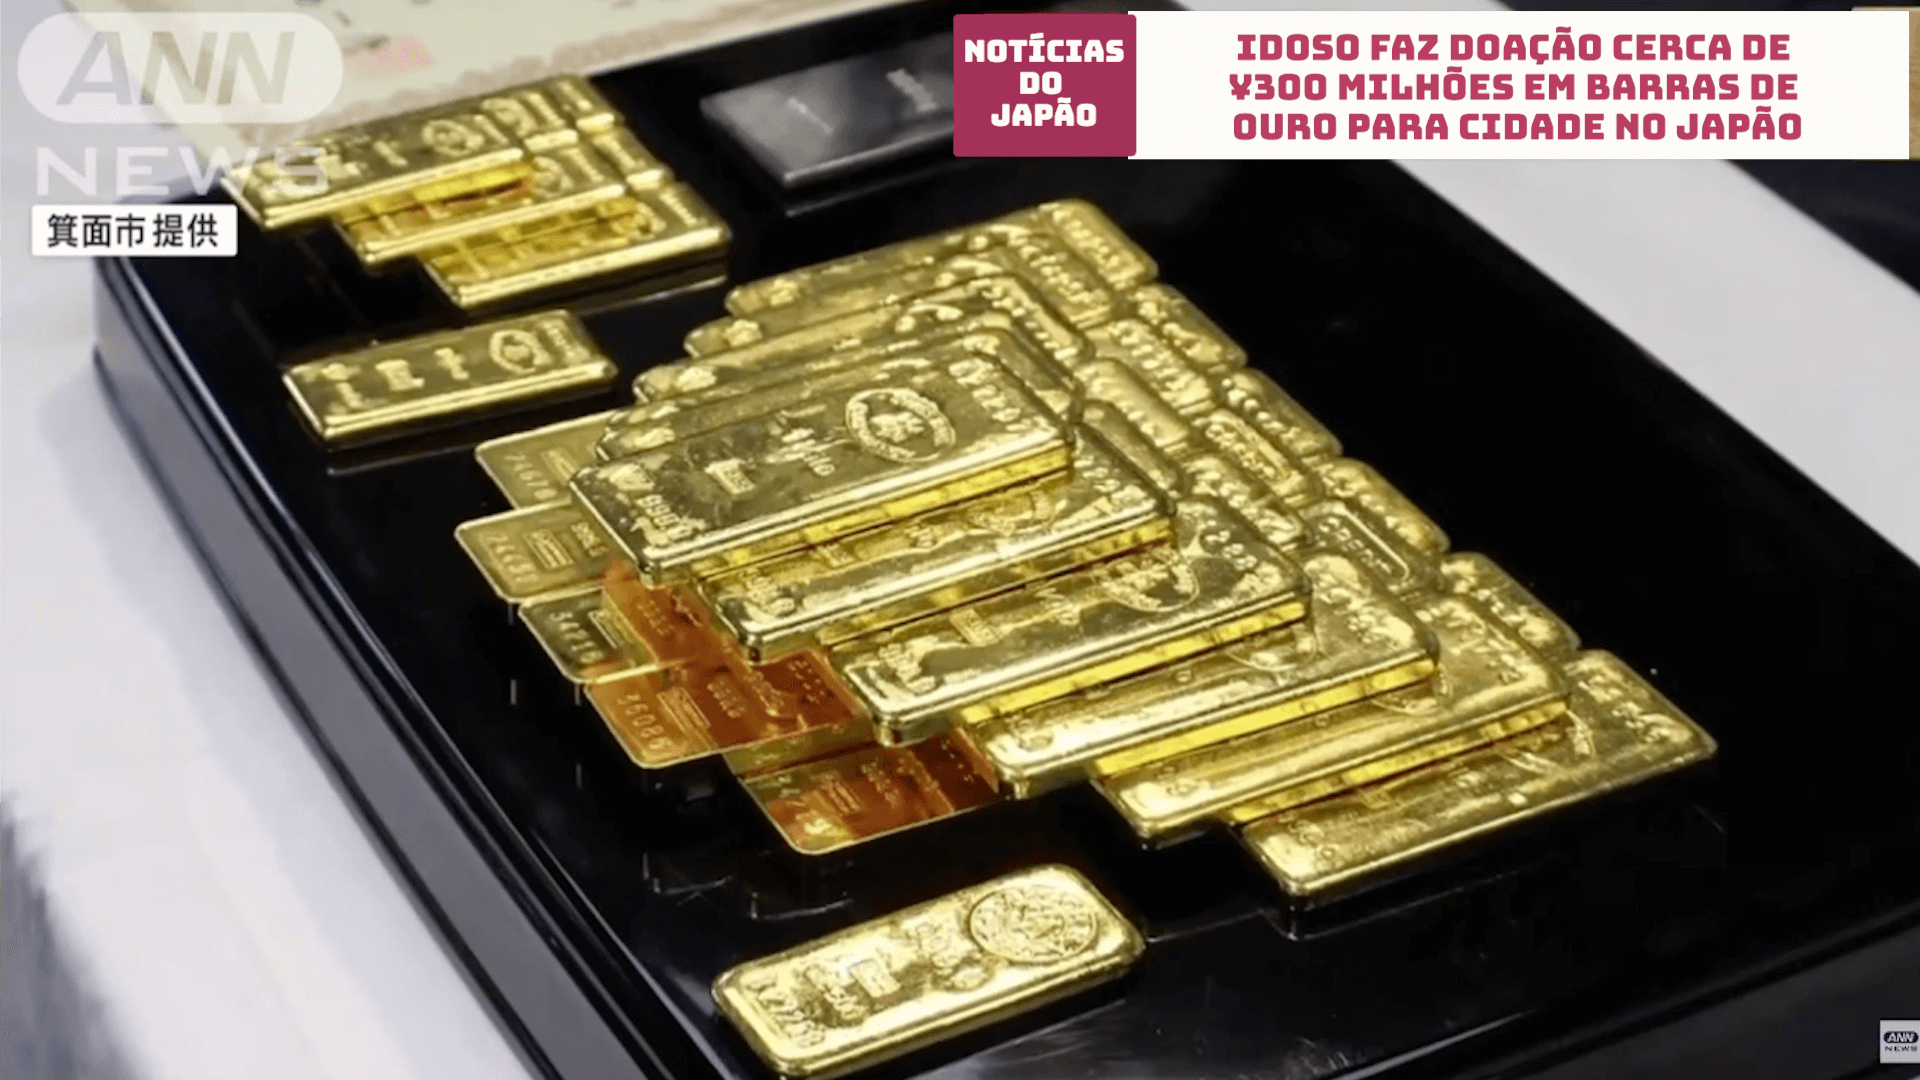 Idoso faz doação cerca de 300 milhões de ienes em barras de ouro para cidade no Japão